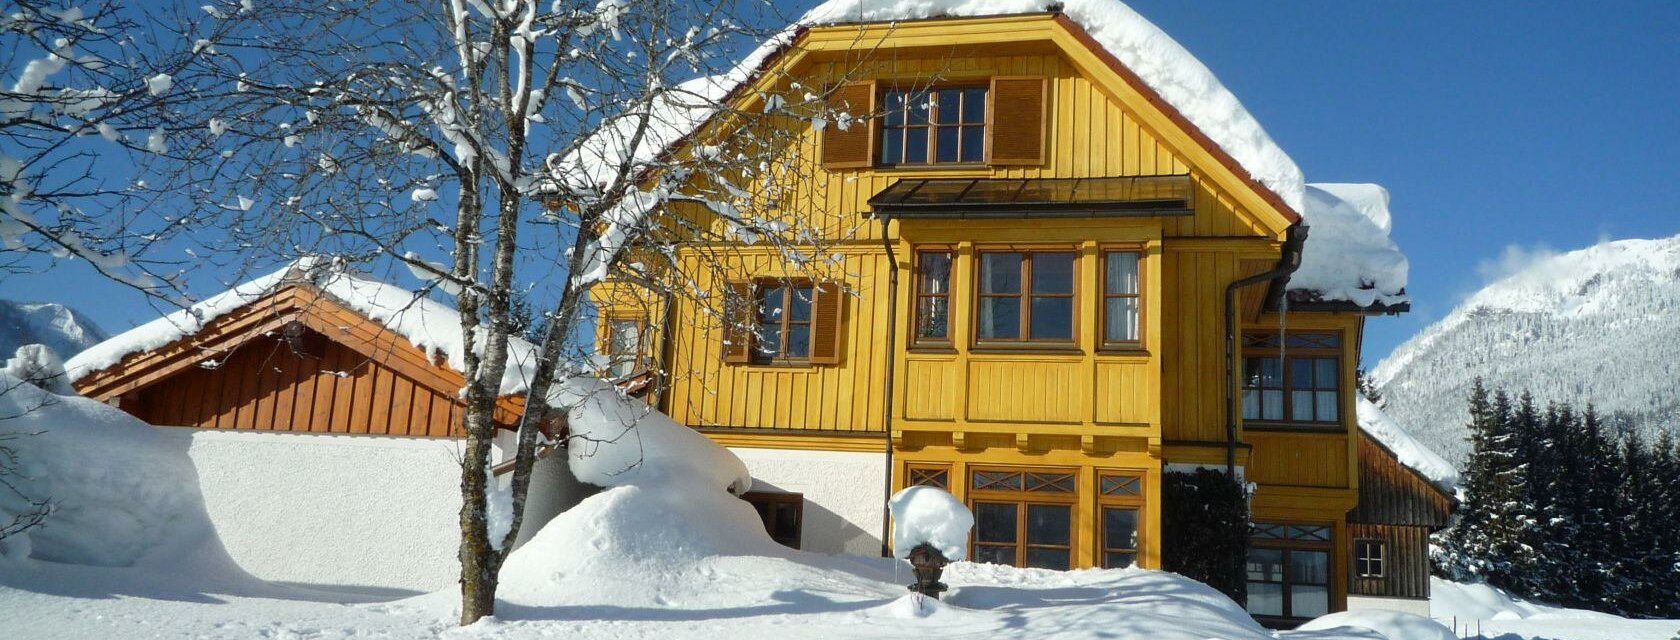 Haus Schlömicher, Bad Mitterndorf, Winter